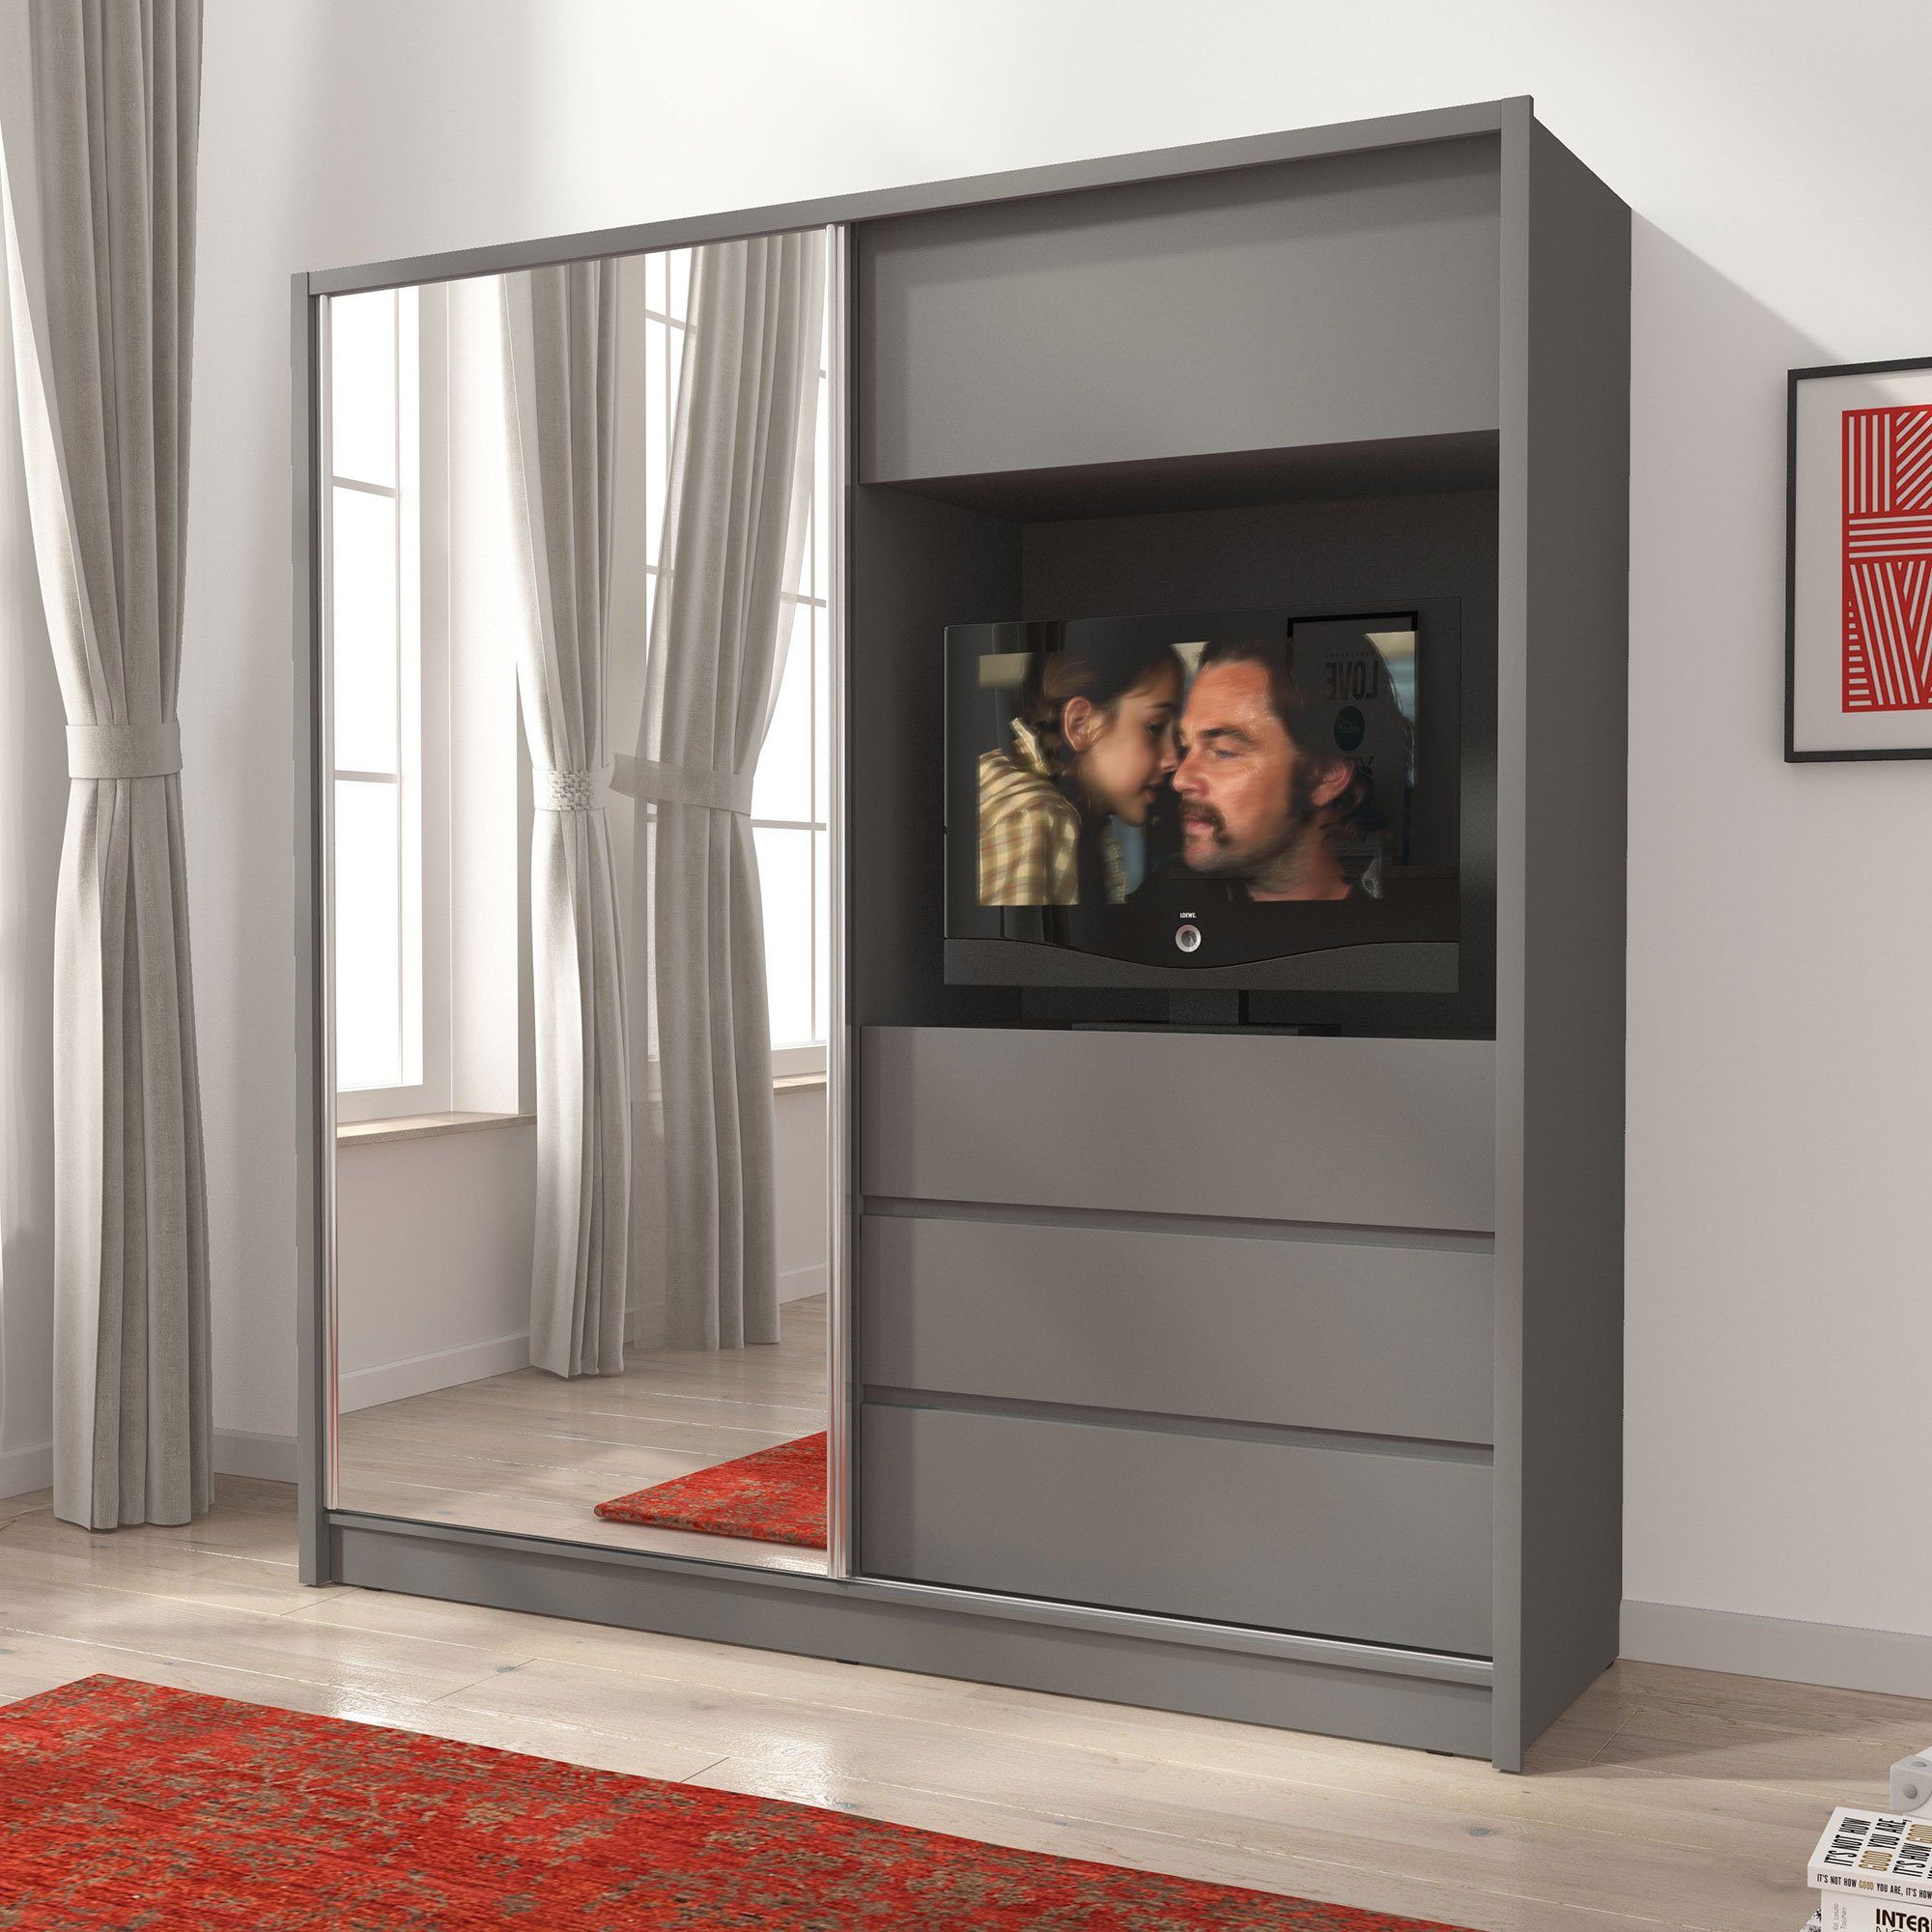 Baidani Kleiderschrank Schrank Cosmo mit TV Vorrichtung